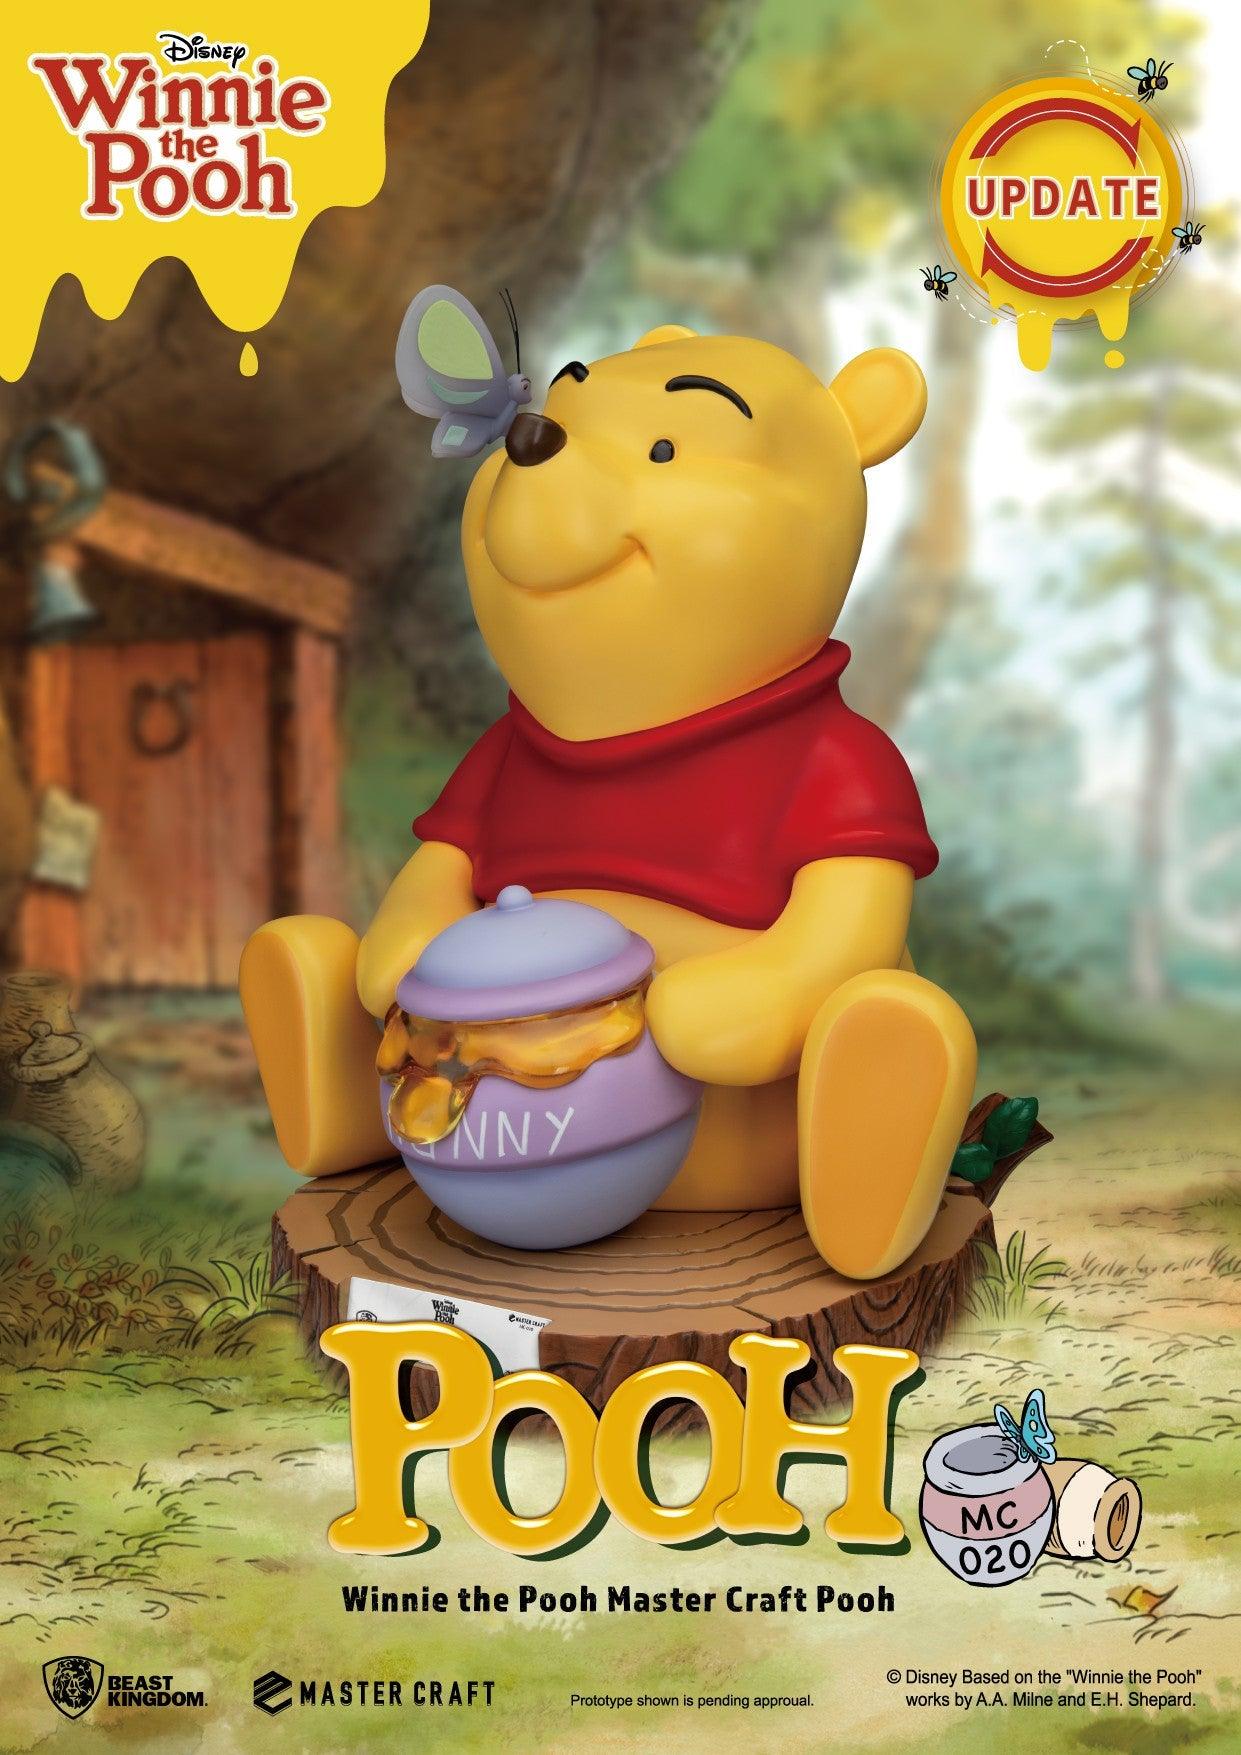 Beast Kingdom Master Craft Winnie the Pooh Collectables / Figurines / Beast Kingdom by Beast Kingdom | Titan Pop Culture